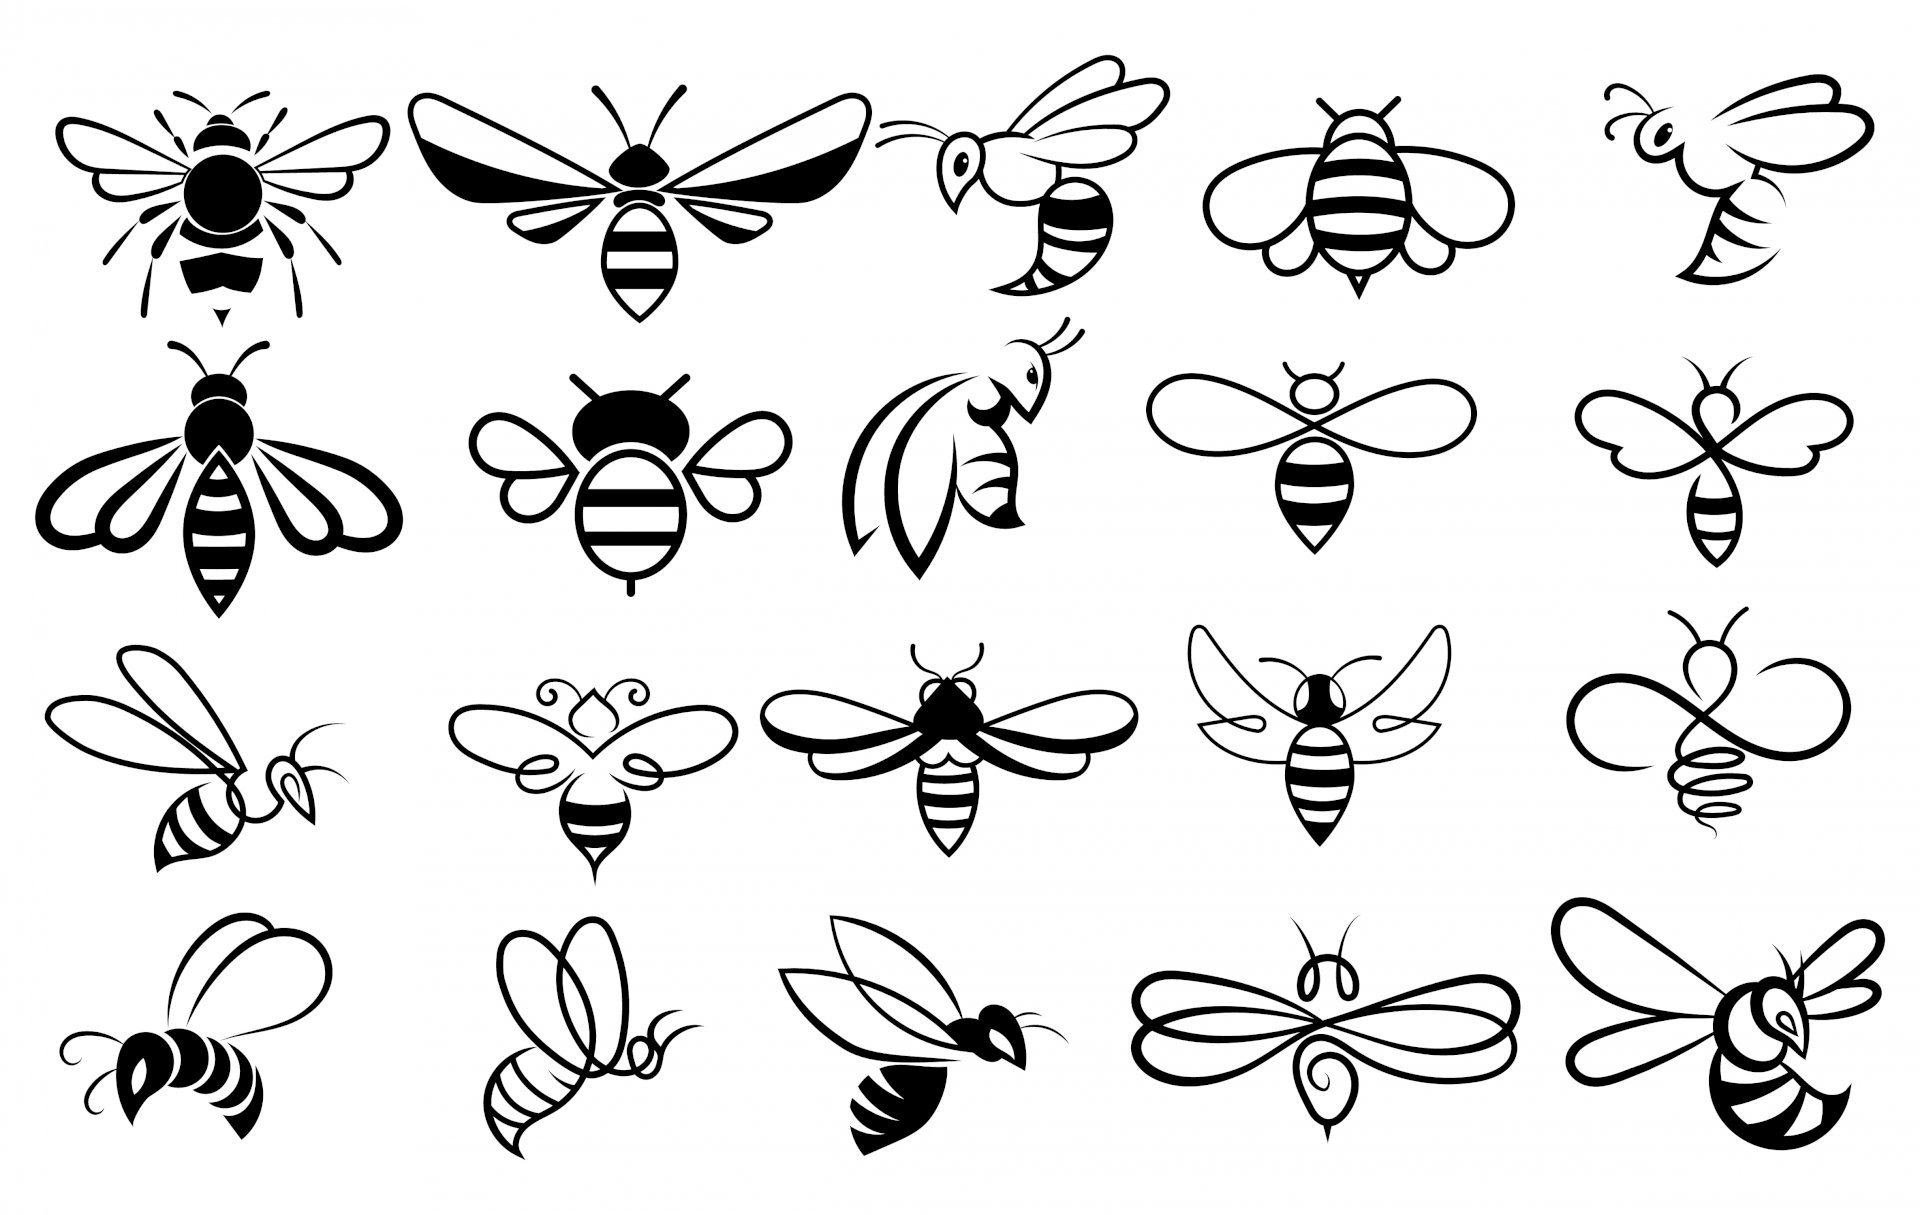 Con ong vector miễn phí sẽ giúp bạn tiết kiệm thời gian và công sức trong việc thiết kế và tạo ra những bức tranh đẹp mắt. Khám phá ngay các mẫu con ong vector độc đáo và tuyệt vời để sử dụng cho công việc hoặc trong những dự án cá nhân sáng tạo của bạn.